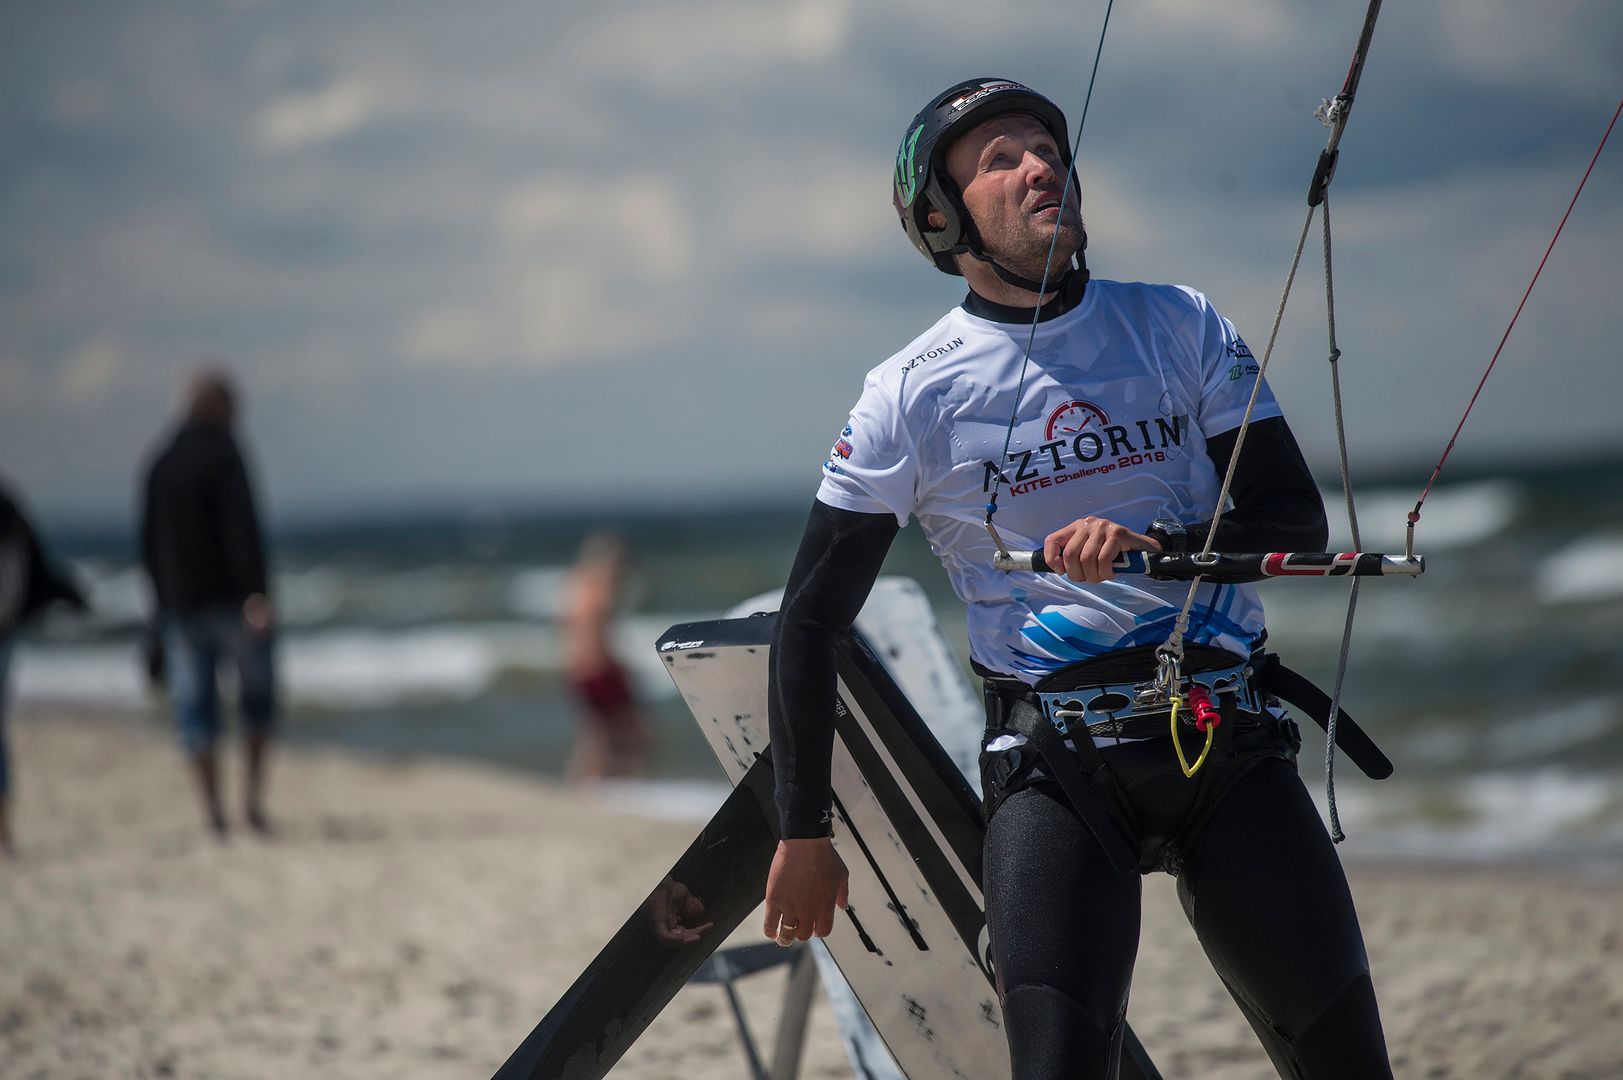 Aztorin Kite Challenge - startują kolejne zawody z cyklu Pucharu Polski i Mistrzostw Polski w kitesurfingu!